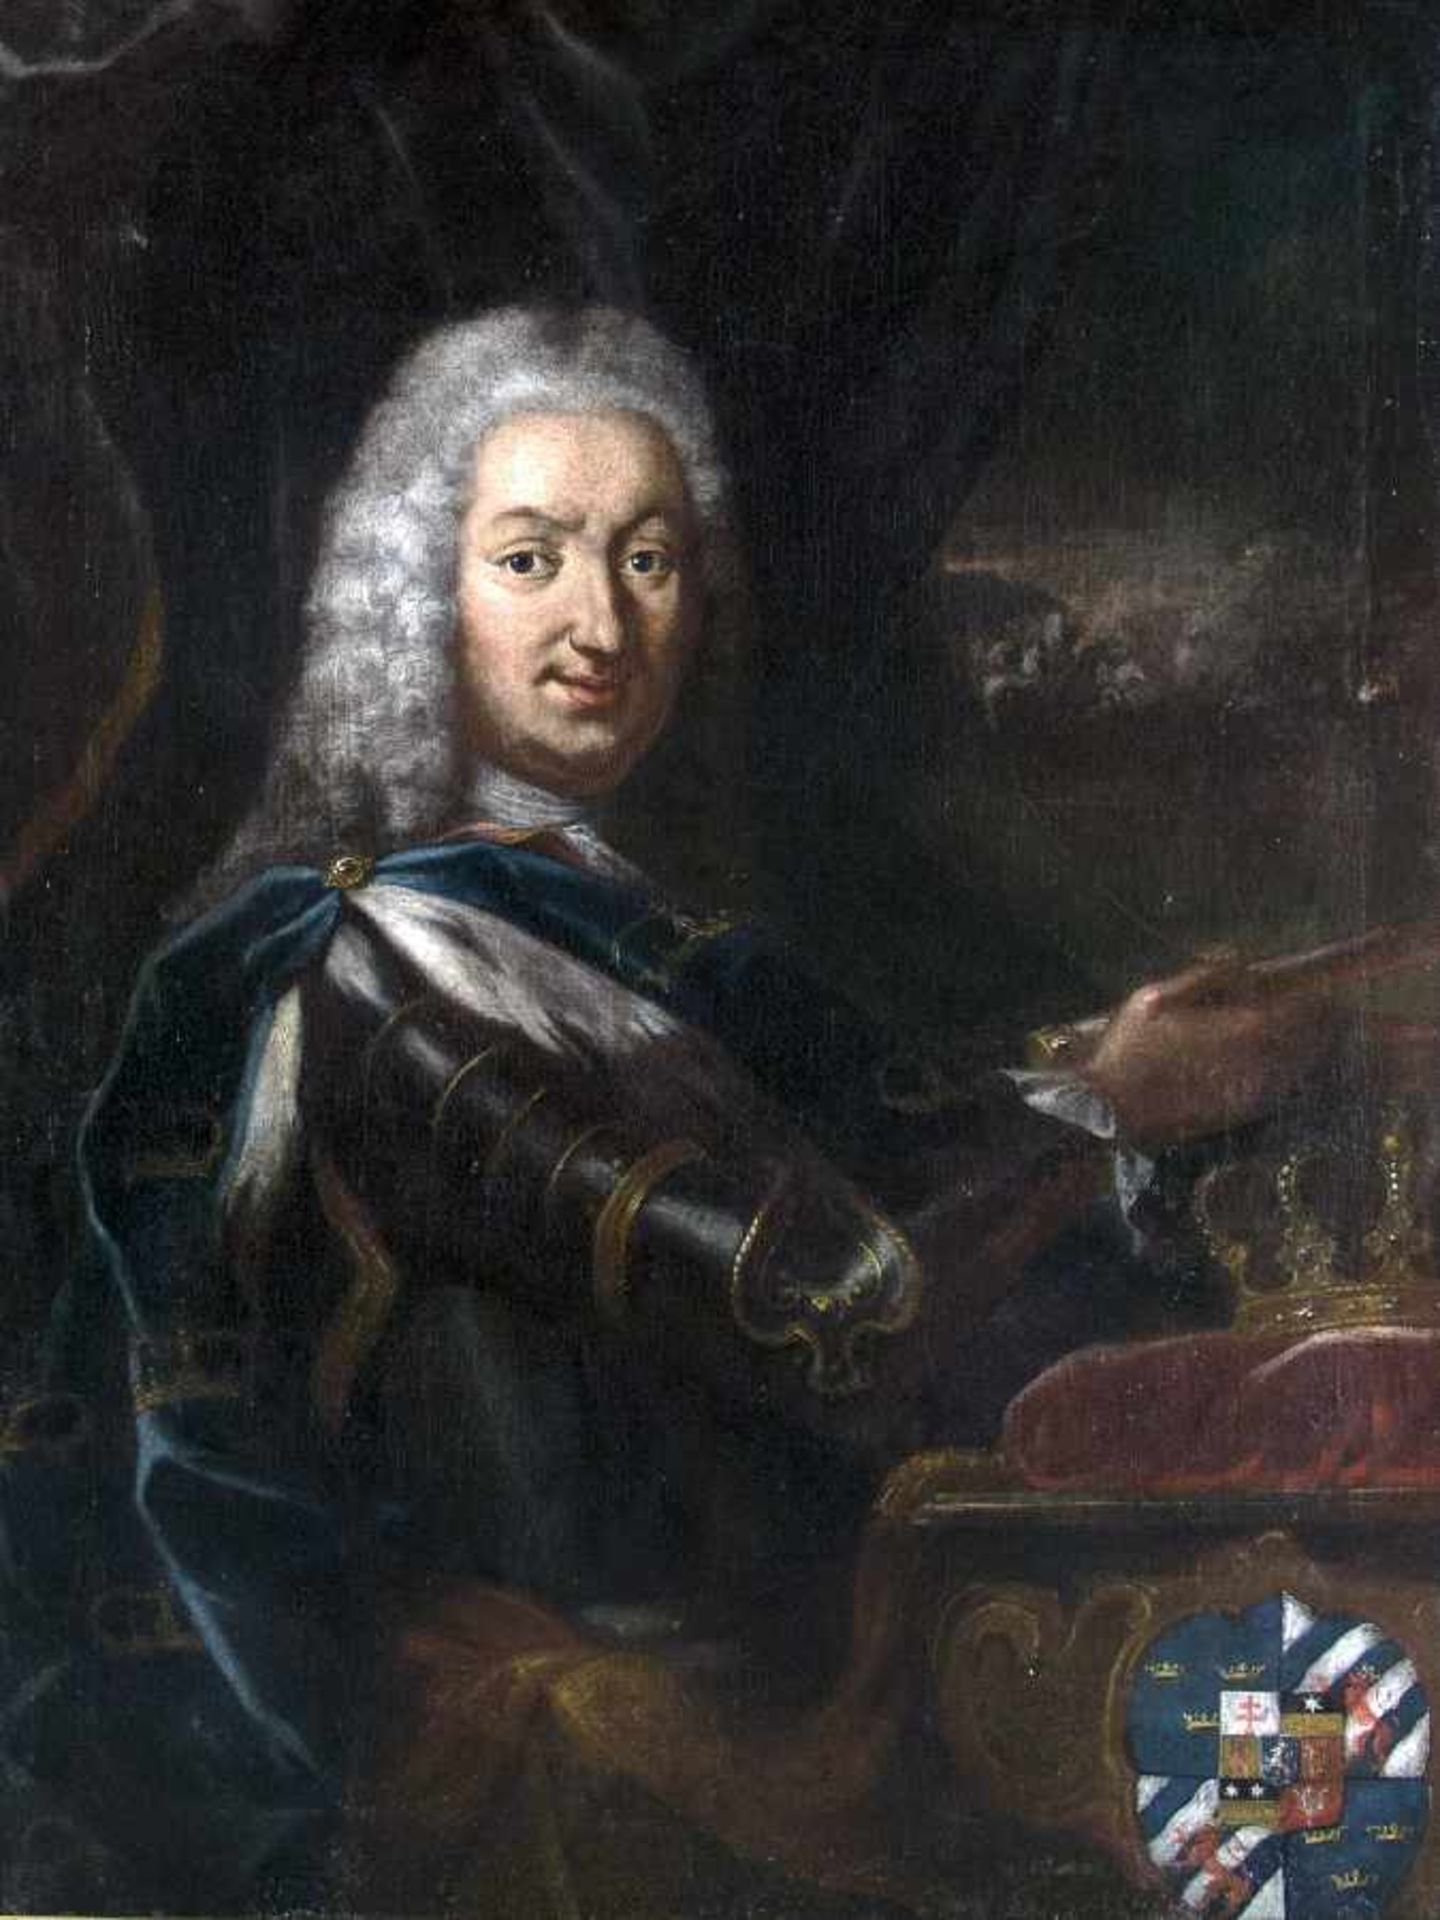 Portraitmaler des 17. Jh.Bildnis Kaiser Karls VII.Öl auf Lwd; H 94,5 cm, B 71,5 cmPortrait painter